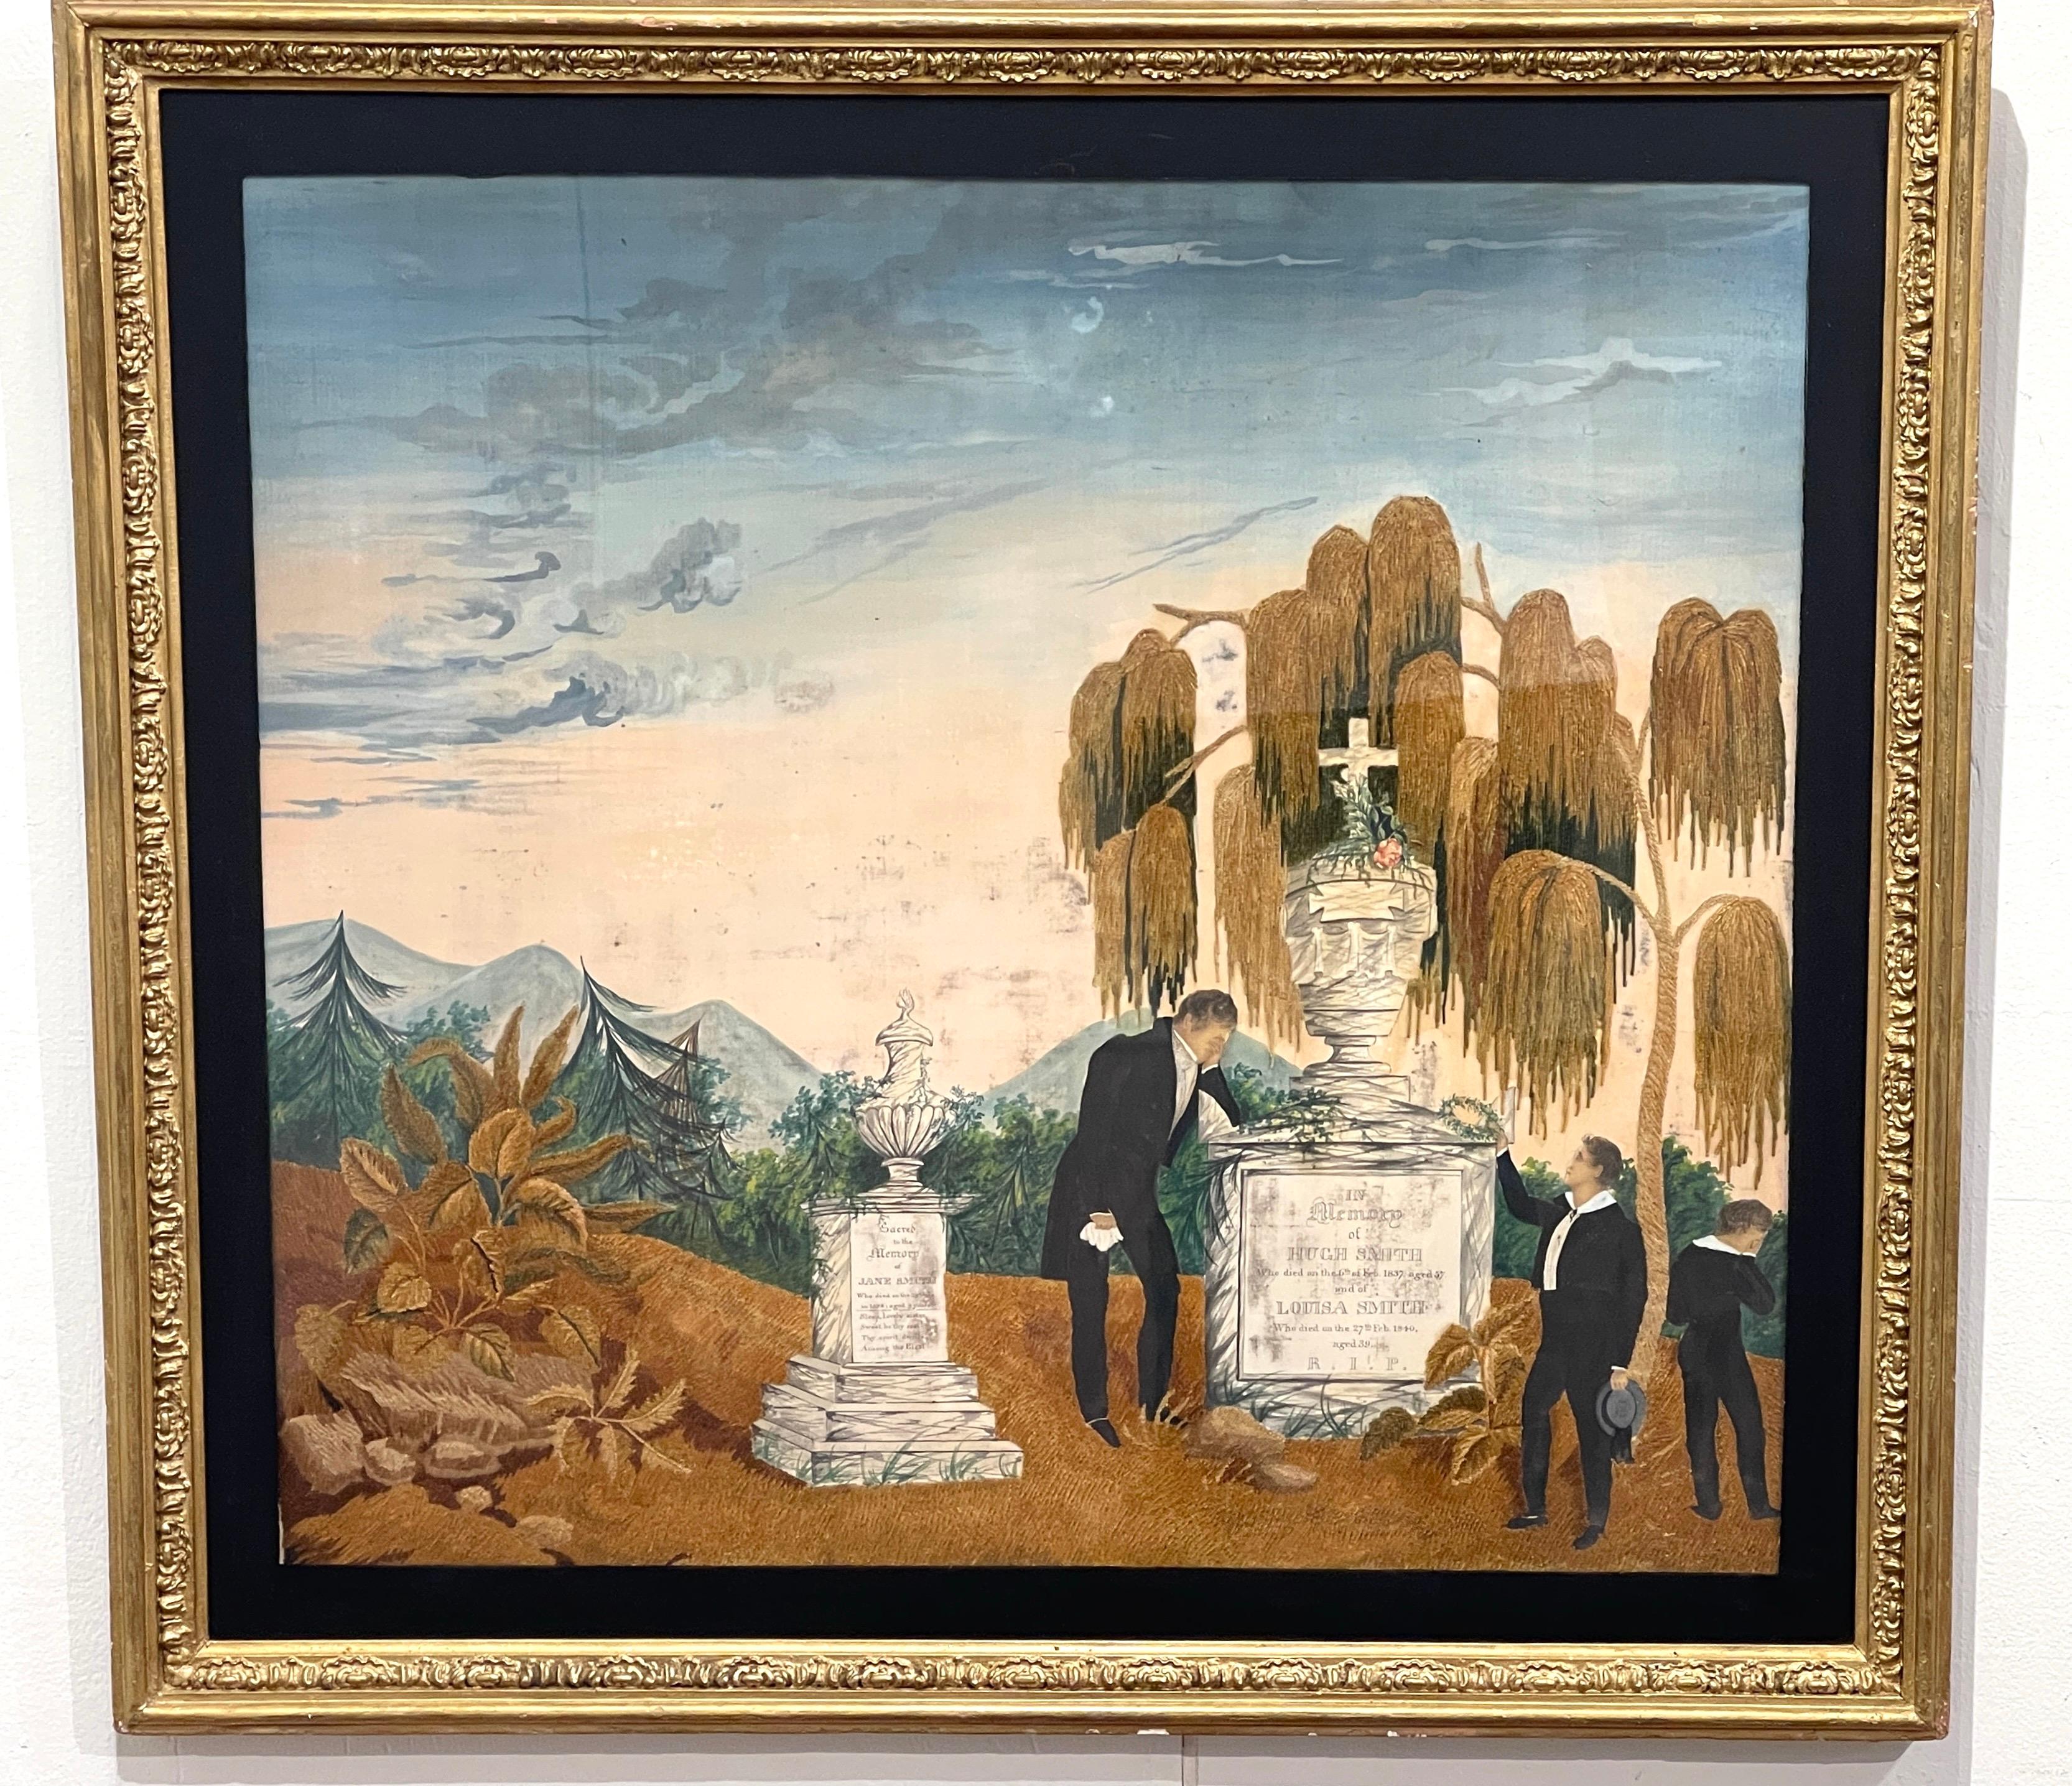 Ein außergewöhnliches, großformatiges, museumswürdiges Beispiel für amerikanische Handarbeit des 19. Erstellt  (1840-1854)  

Darstellung einer Landschaft mit einem dunklen Wolkenhimmel, einer Fernsicht auf gemalte Berge und einem Waldhintergrund.